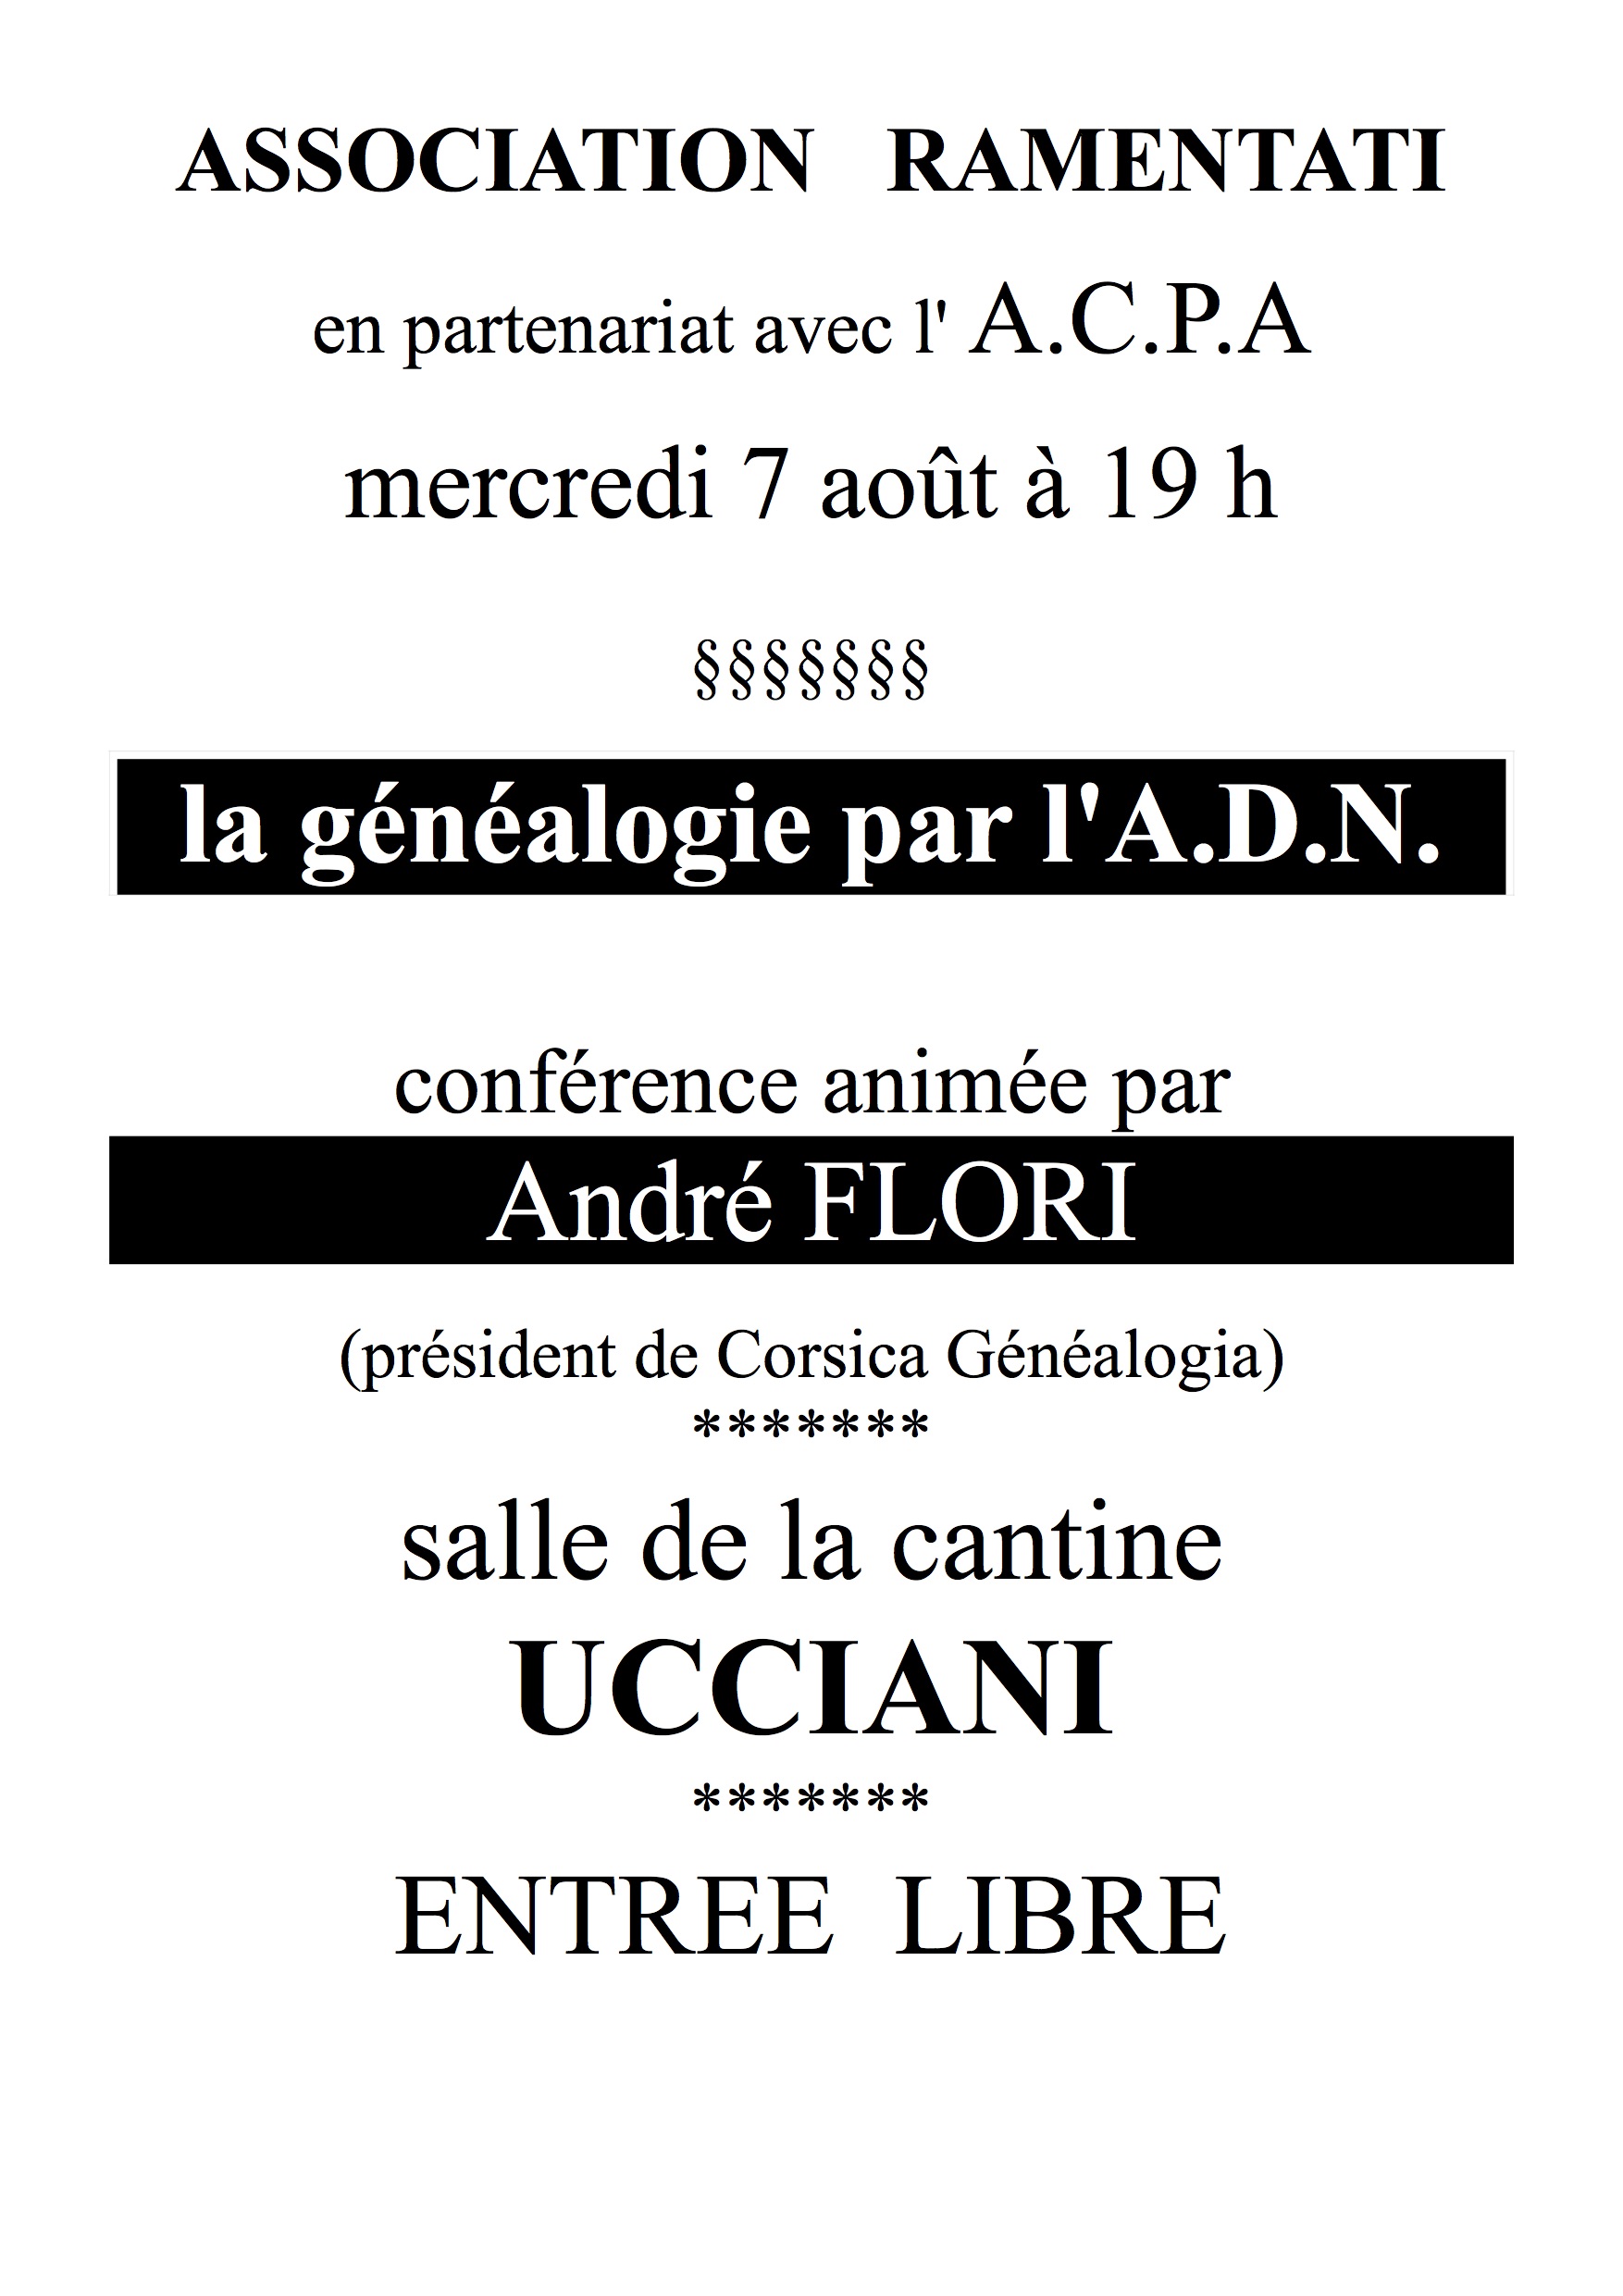 Ucciani : La généalogie par l'A.D.N. en conference le 7 aout prochain